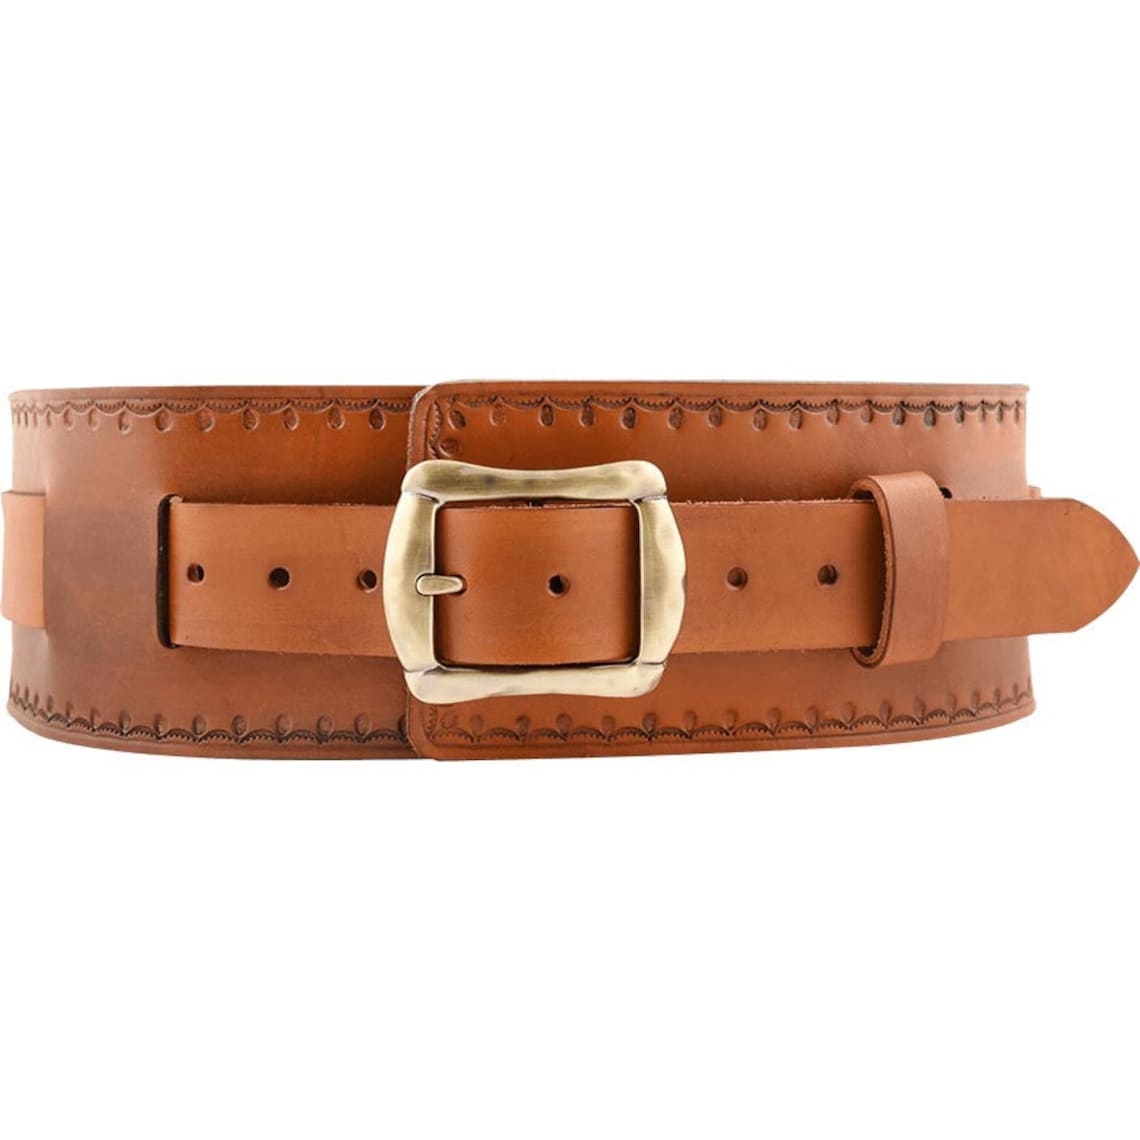 Medieval Wide Belt Leather Belt Buckle Belt for SCA LARP - Etsy